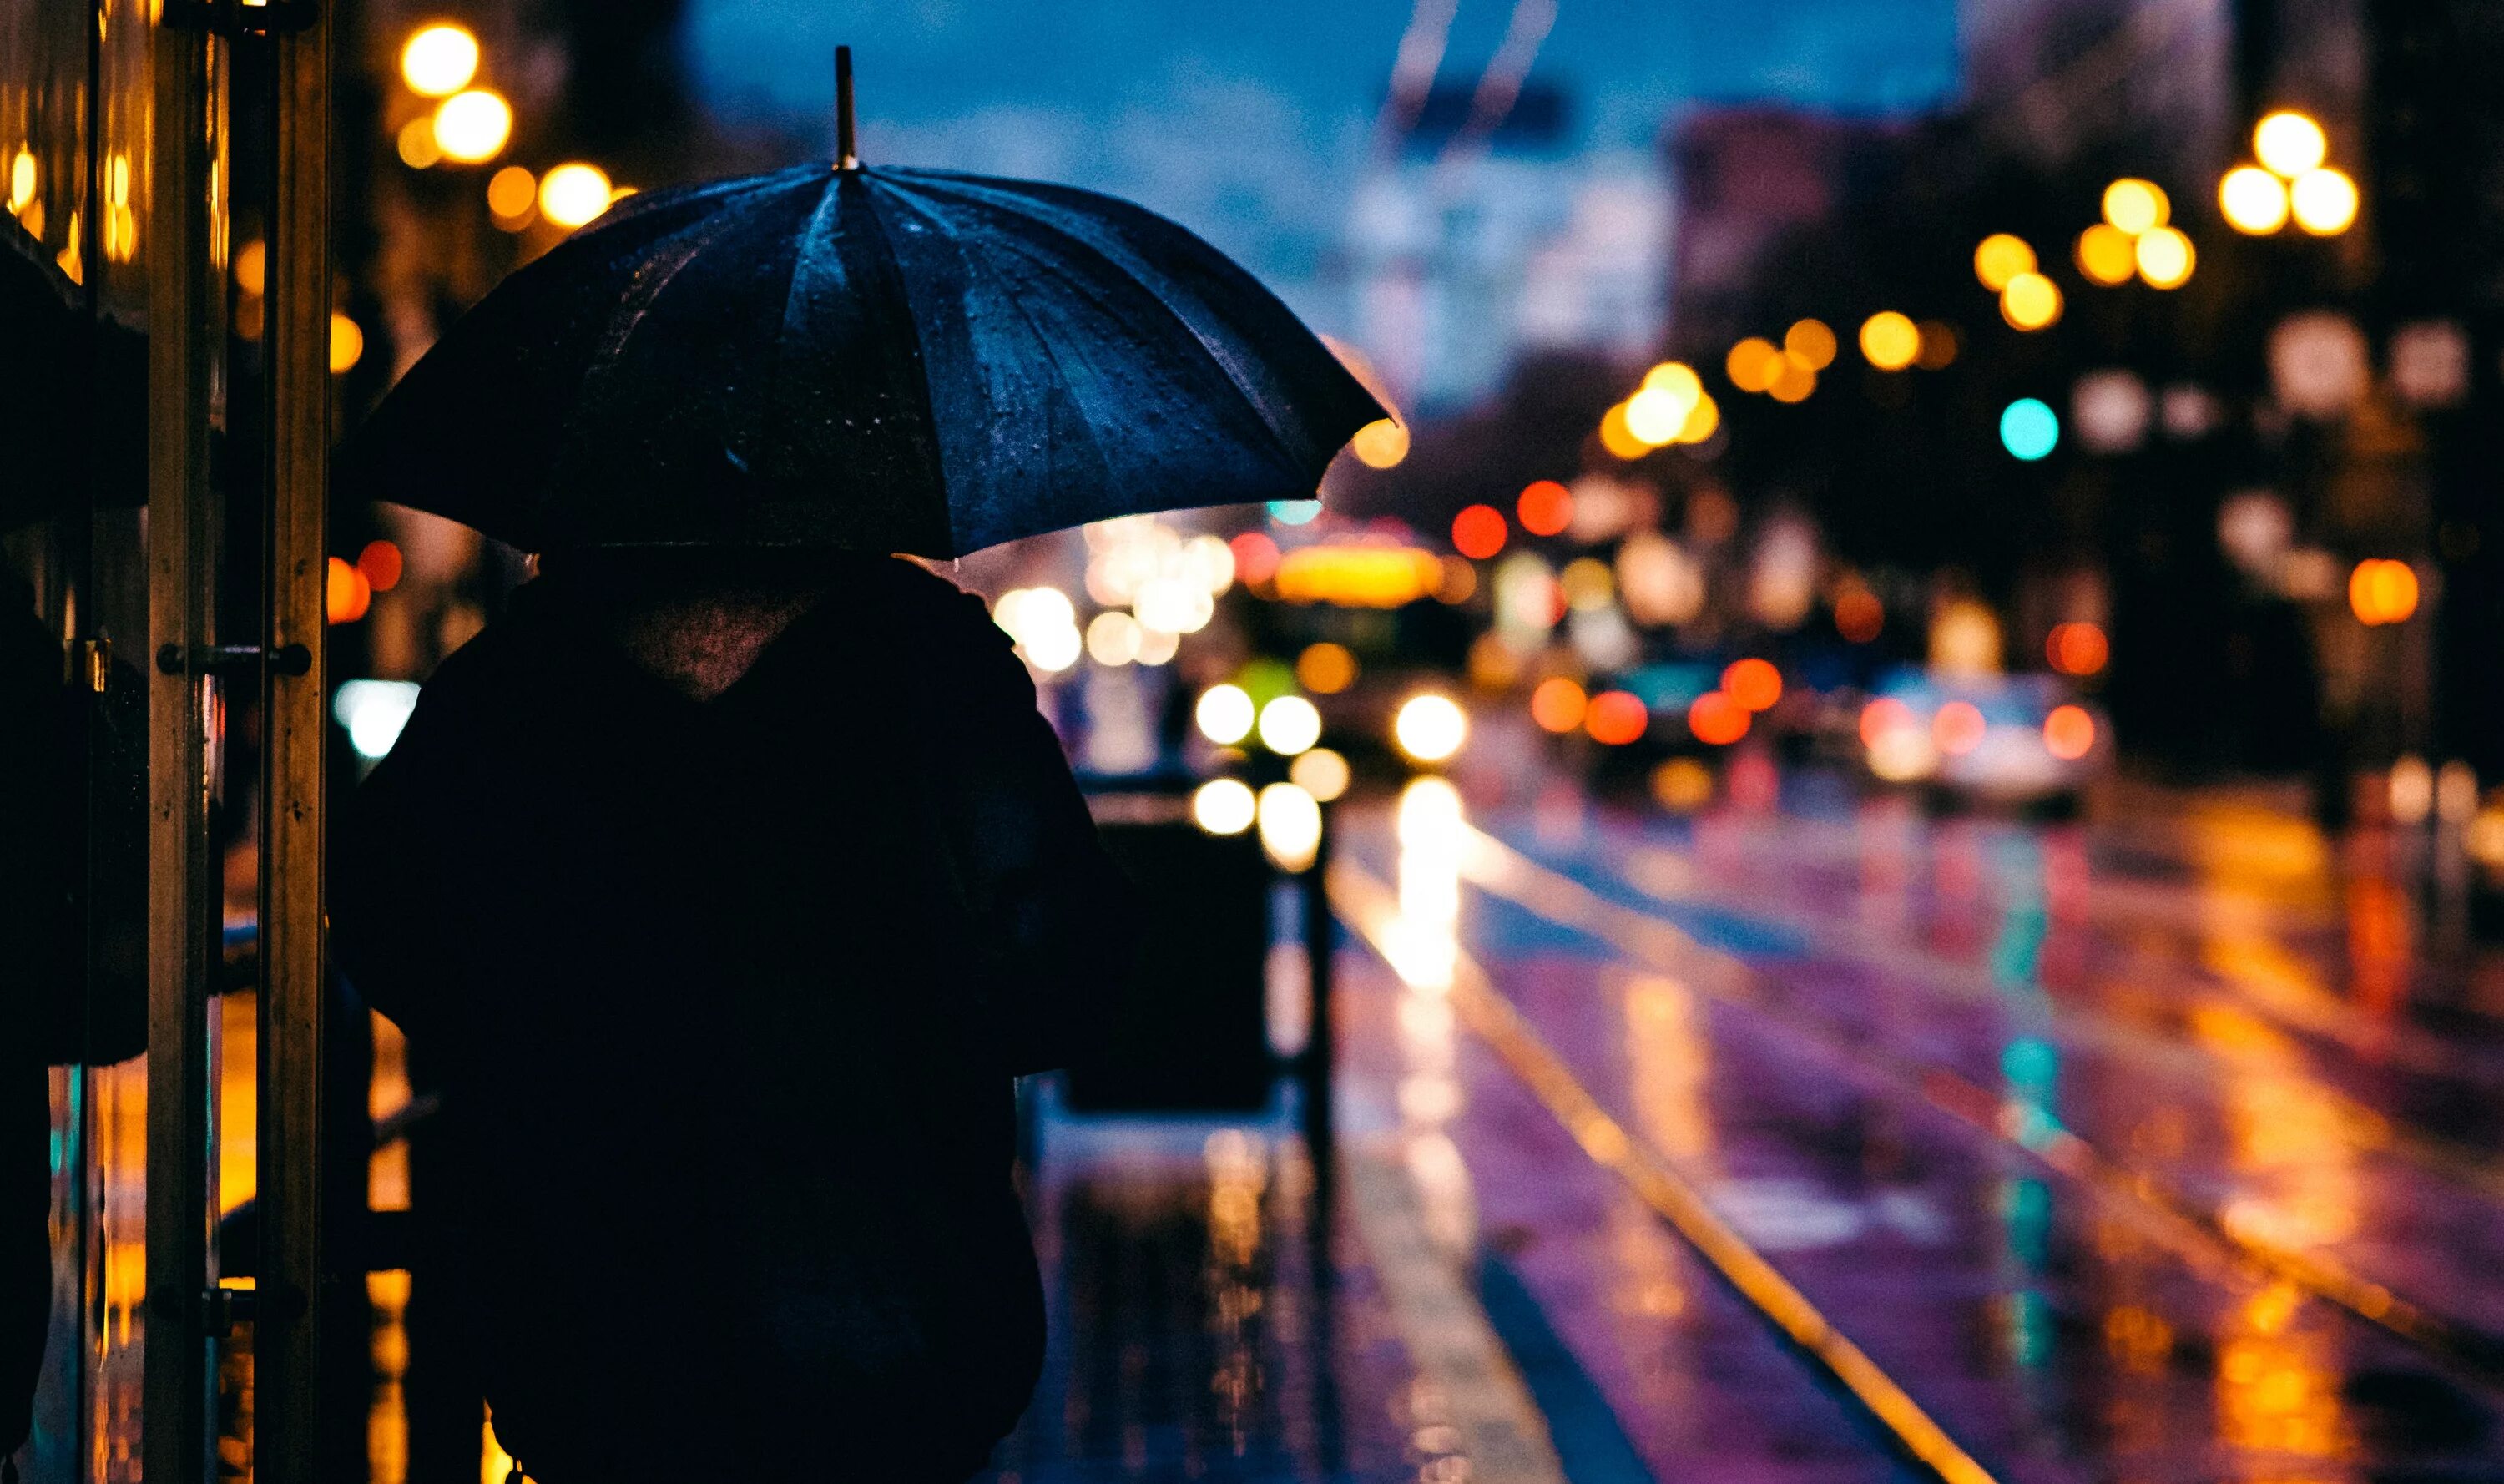 Картинки на статус в ватсап красивые. Дождь ночью. Дождь в городе. "Дождливый вечер". Дождь вечером.